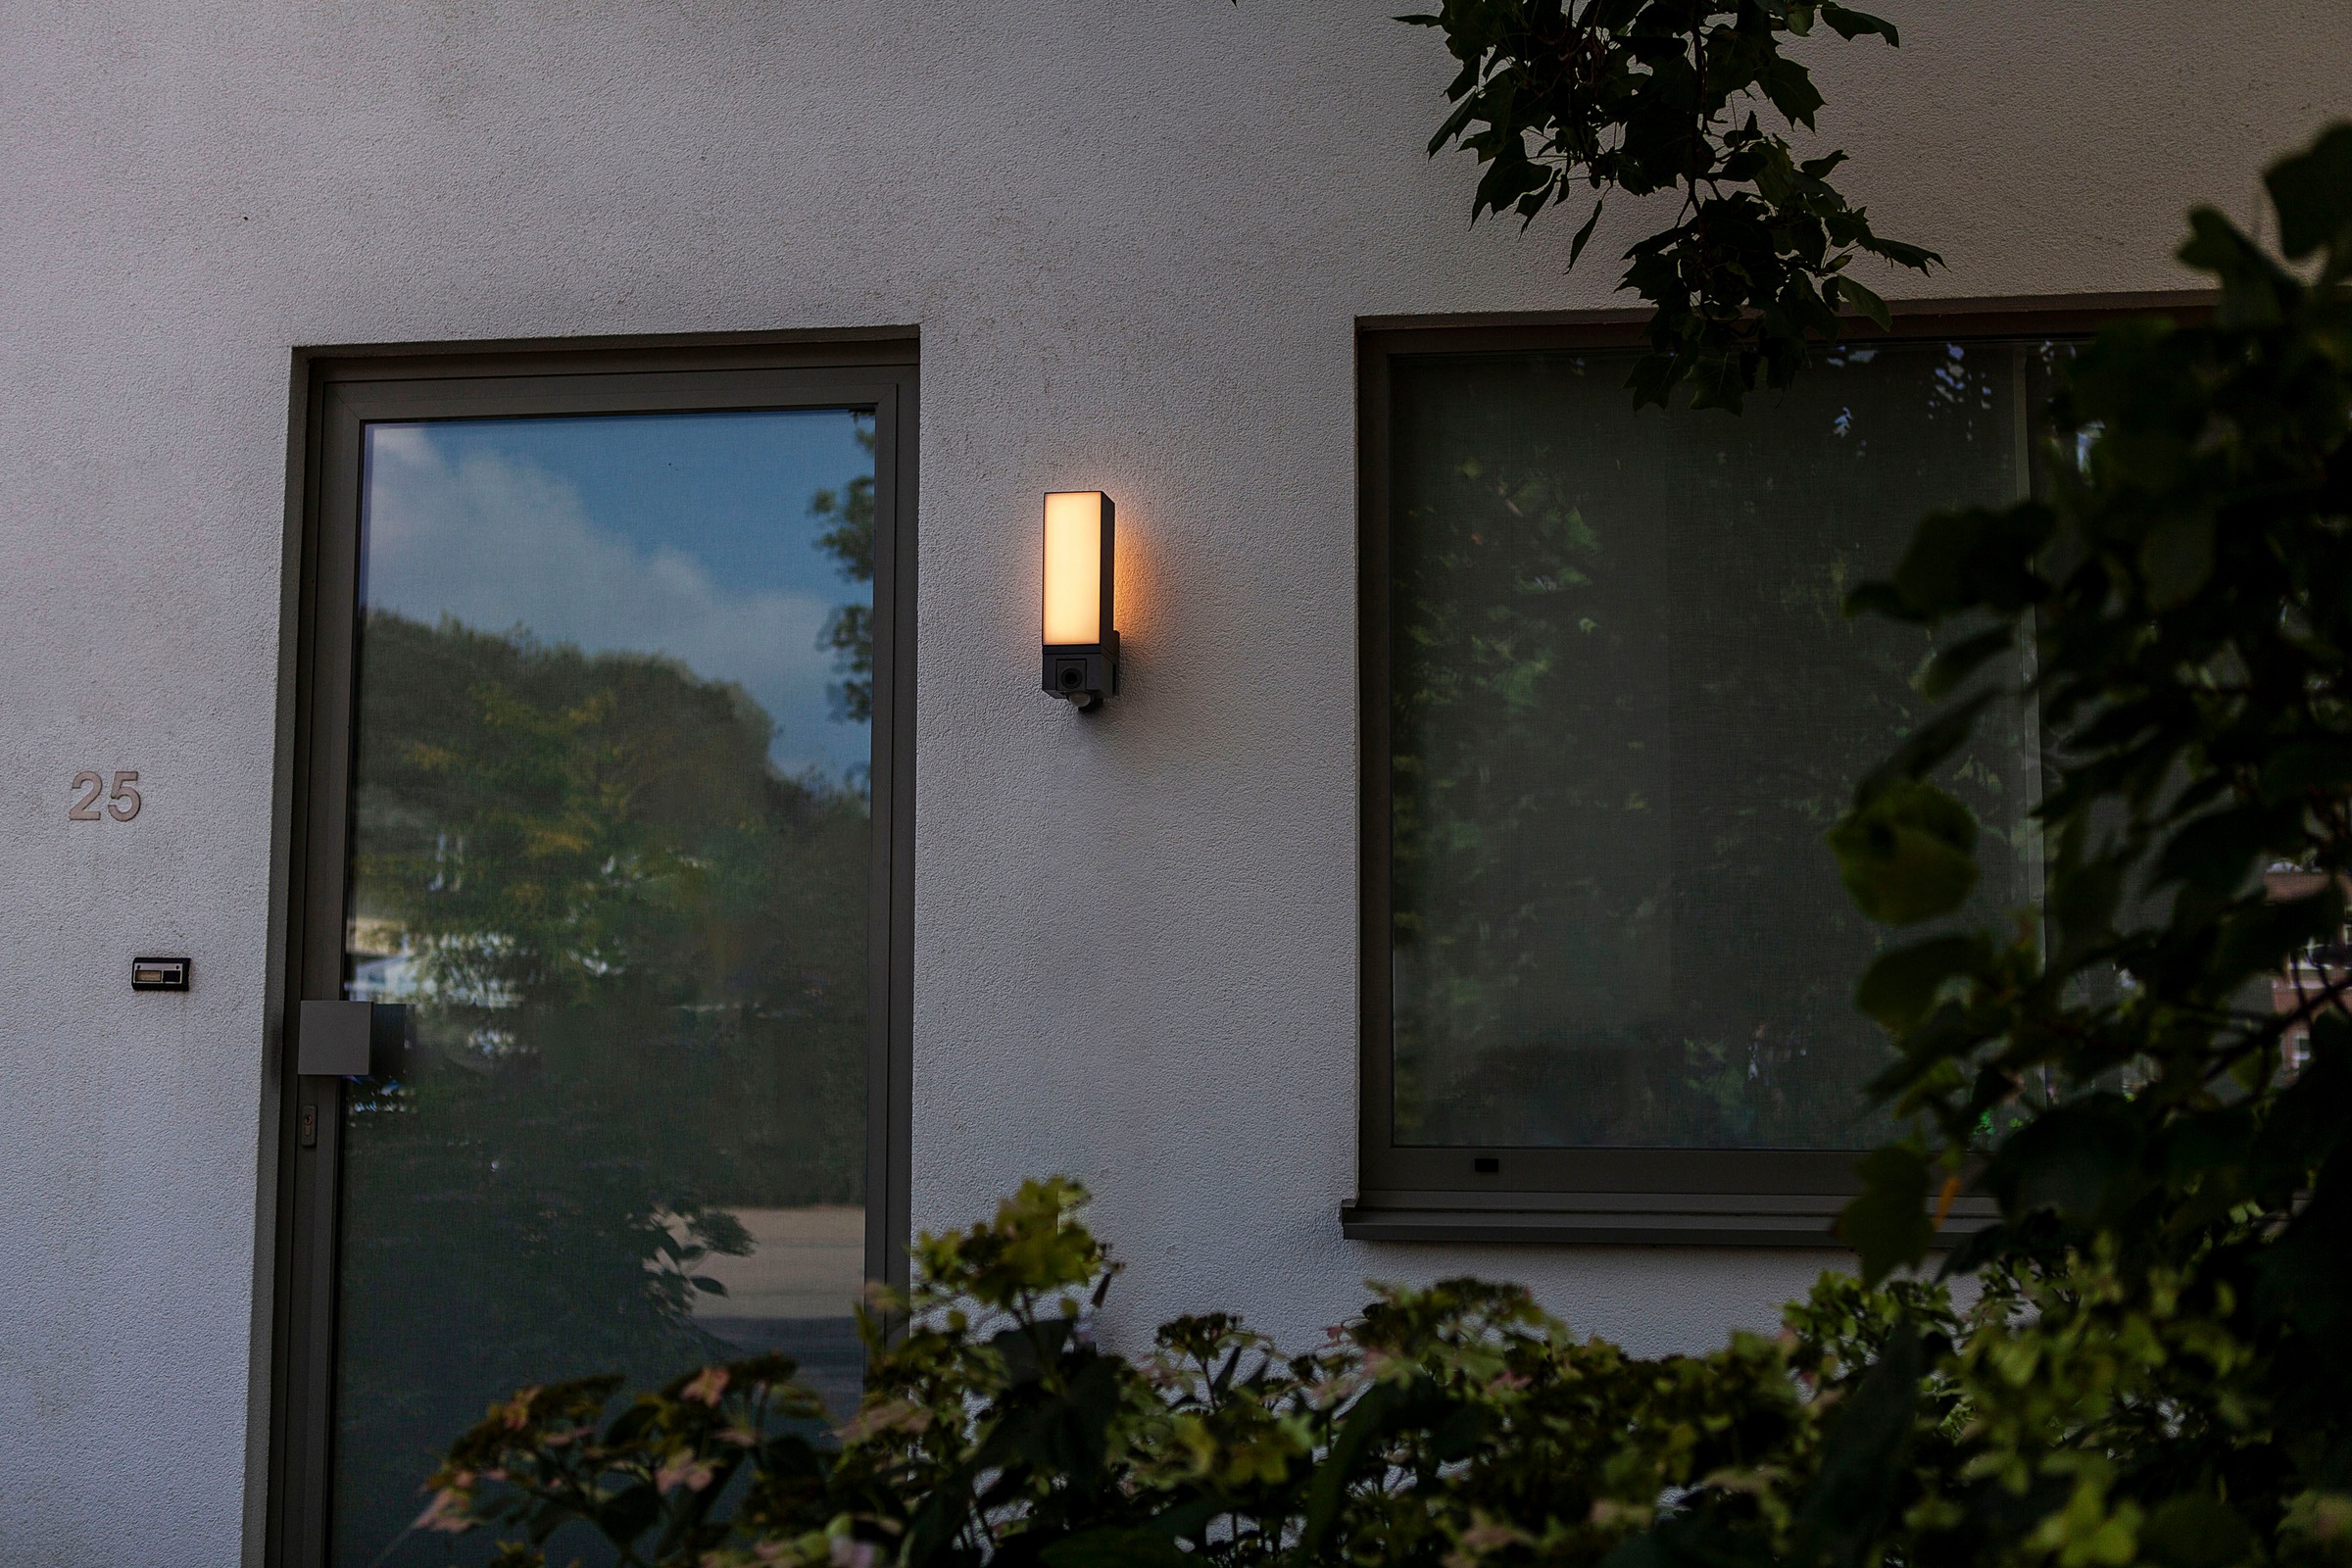 LUTEC Smarte LED-Leuchte »CUBA«, Smart-Home Kameraleuchte online kaufen